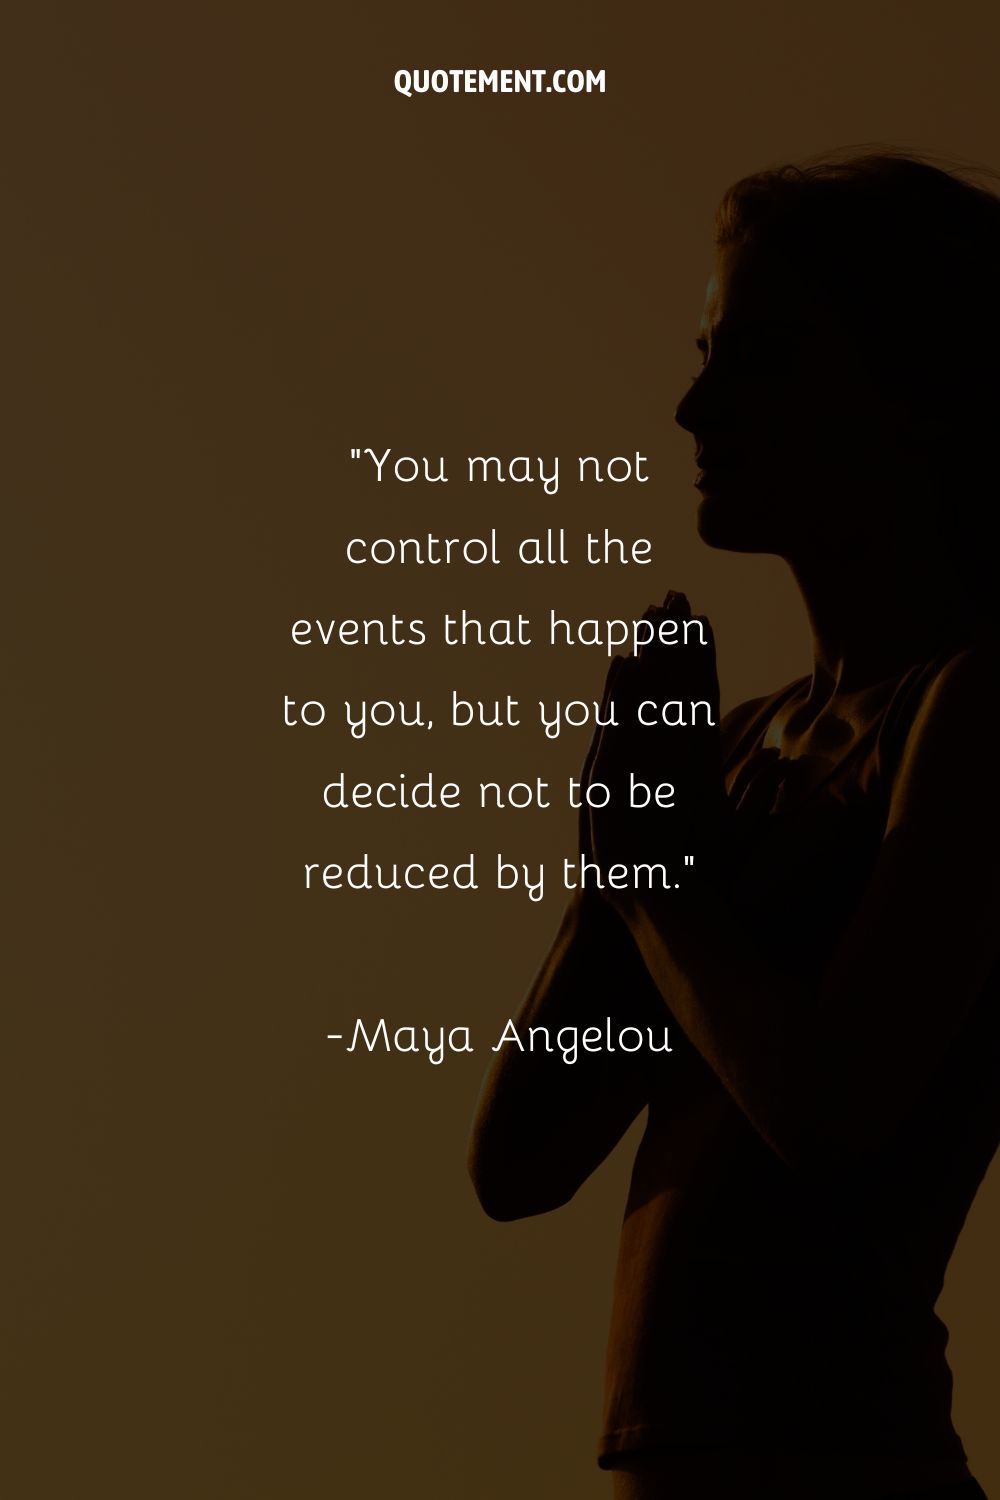 Imagen de una mujer en meditación representando una cita de Maya Angelou.